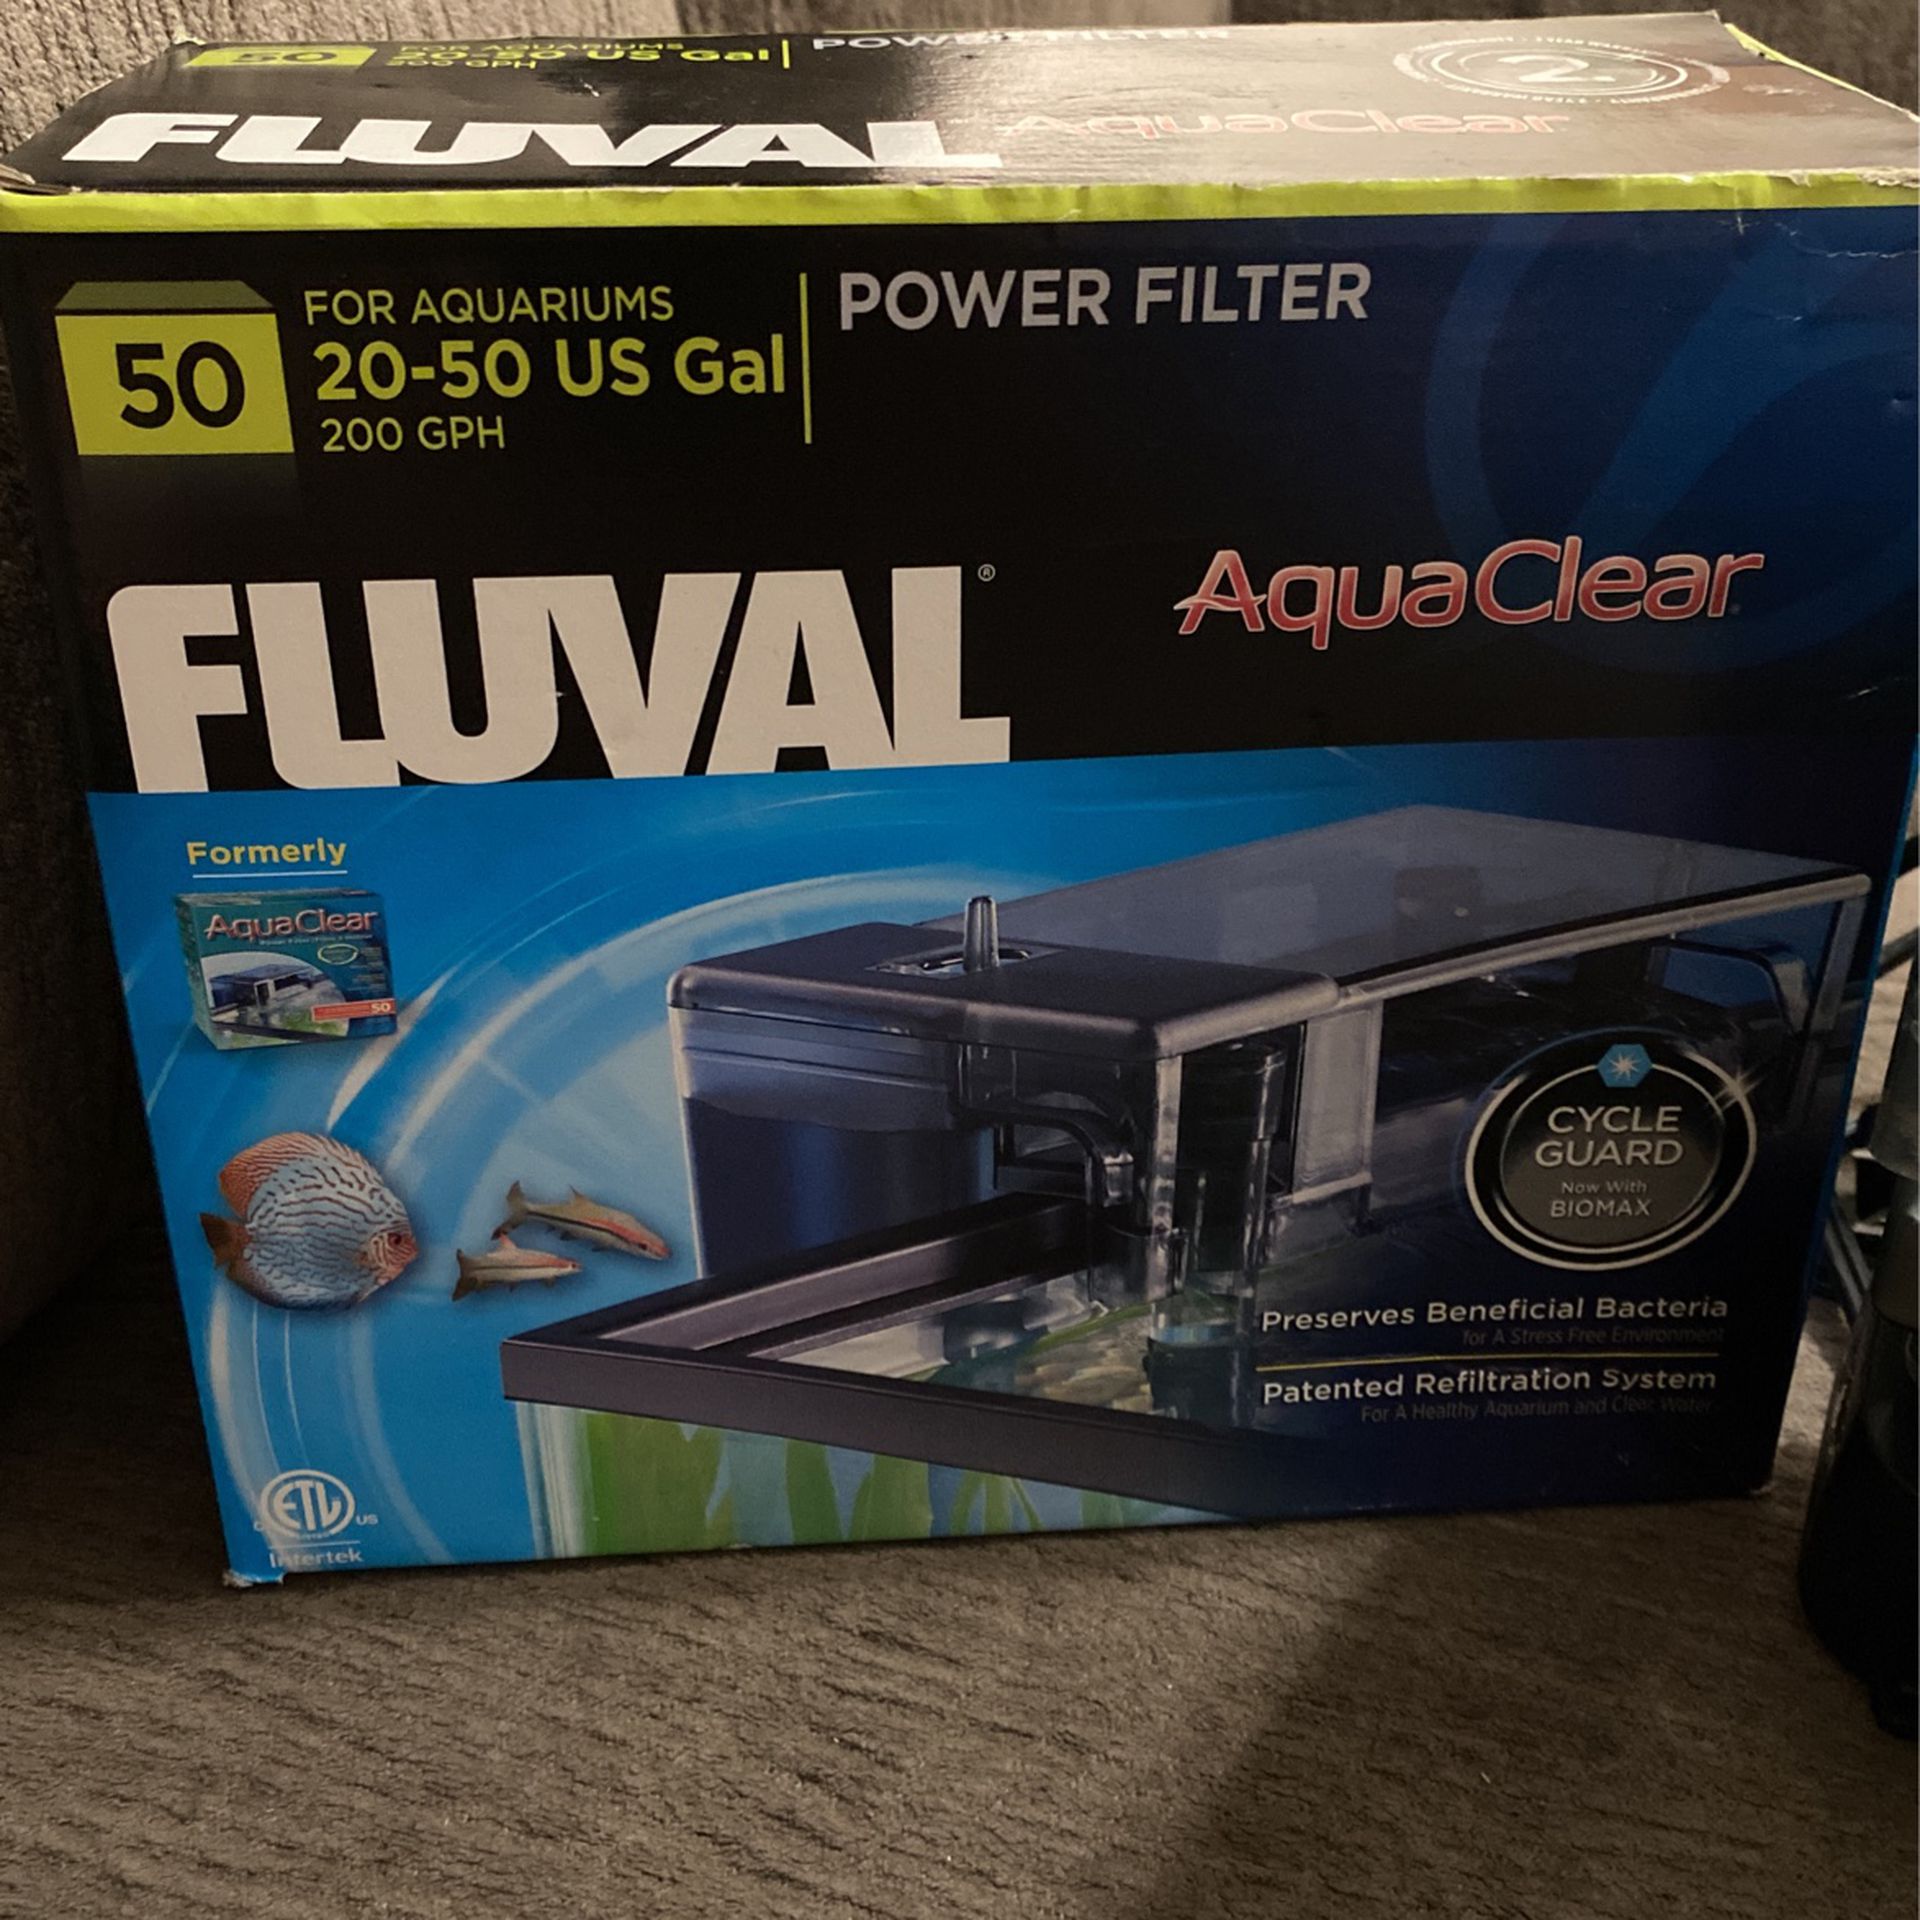 50 Gal Fluval (Aqua Clear) Aquarium Filter